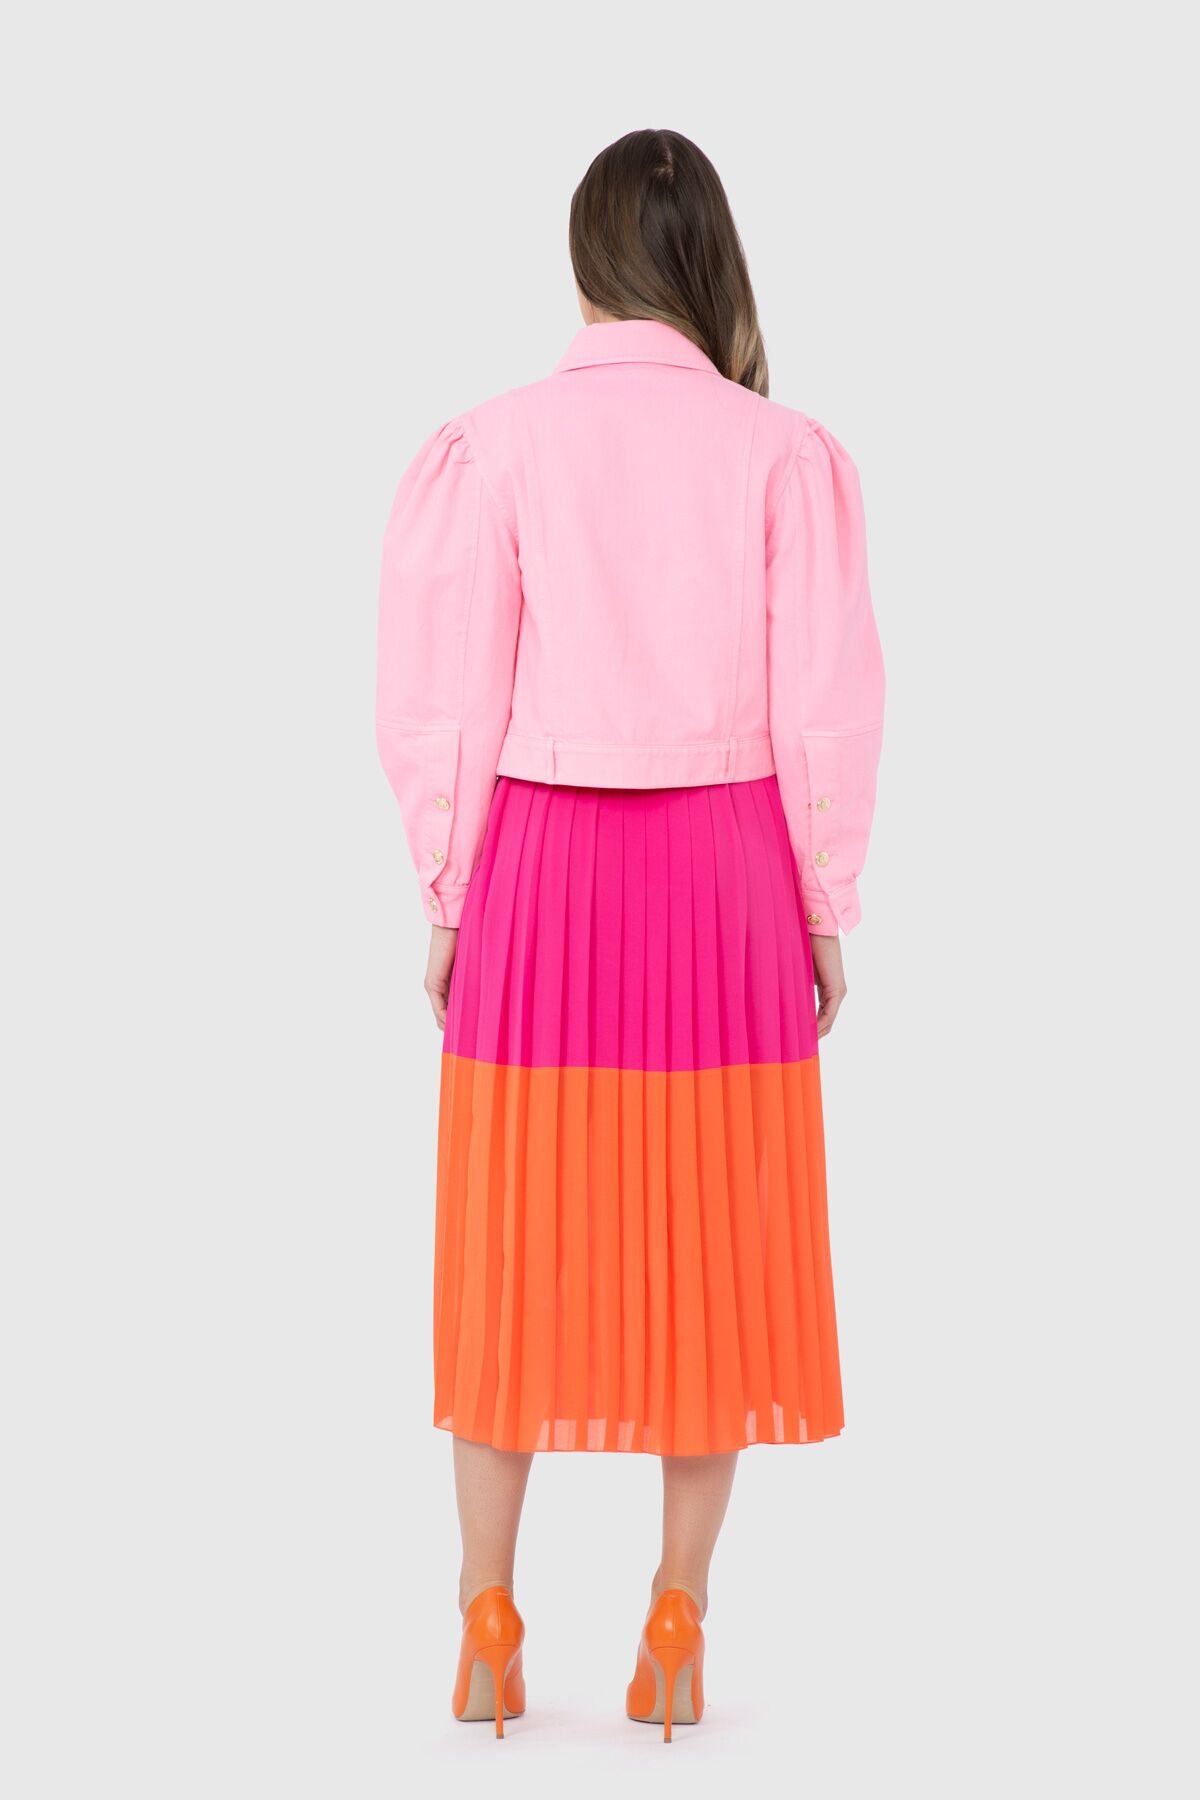 Shoulder Frill Detailed Short Pink Jacket